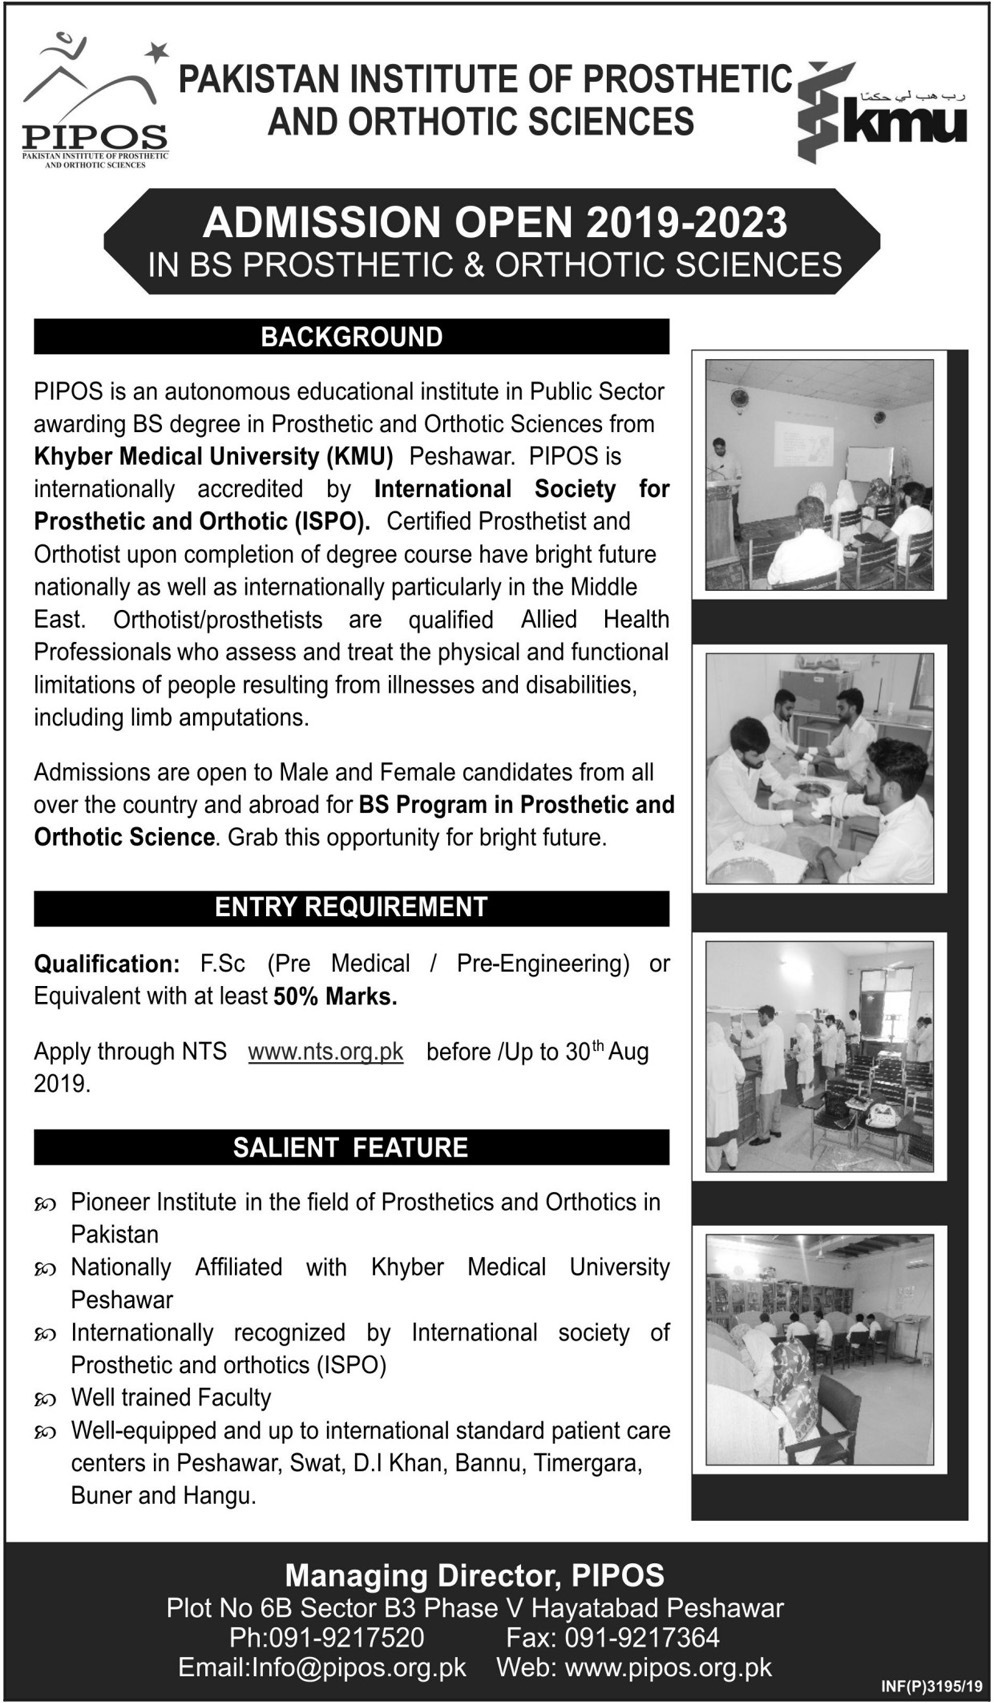 PAKISTAN INSTITUTE OF PROSTHETICS & ORTHOTIC SCIENCES ADMISSION 2019